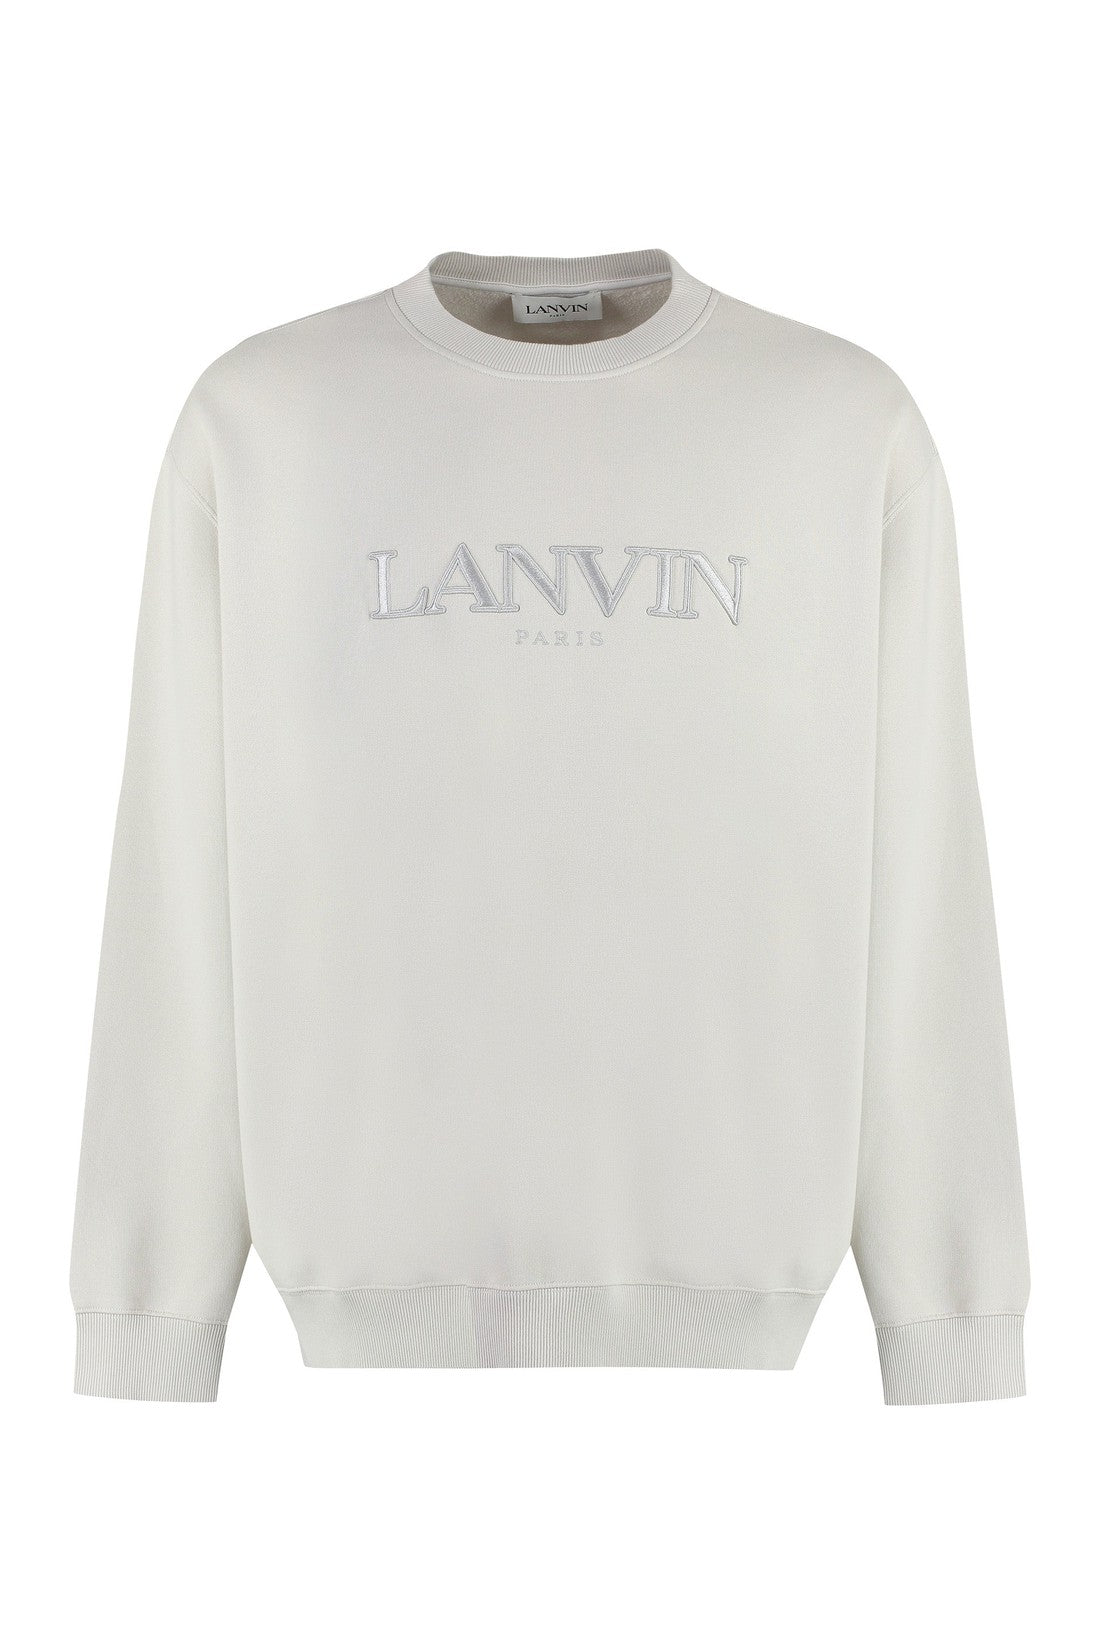 Lanvin-OUTLET-SALE-Cotton crew-neck sweatshirt with logo-ARCHIVIST